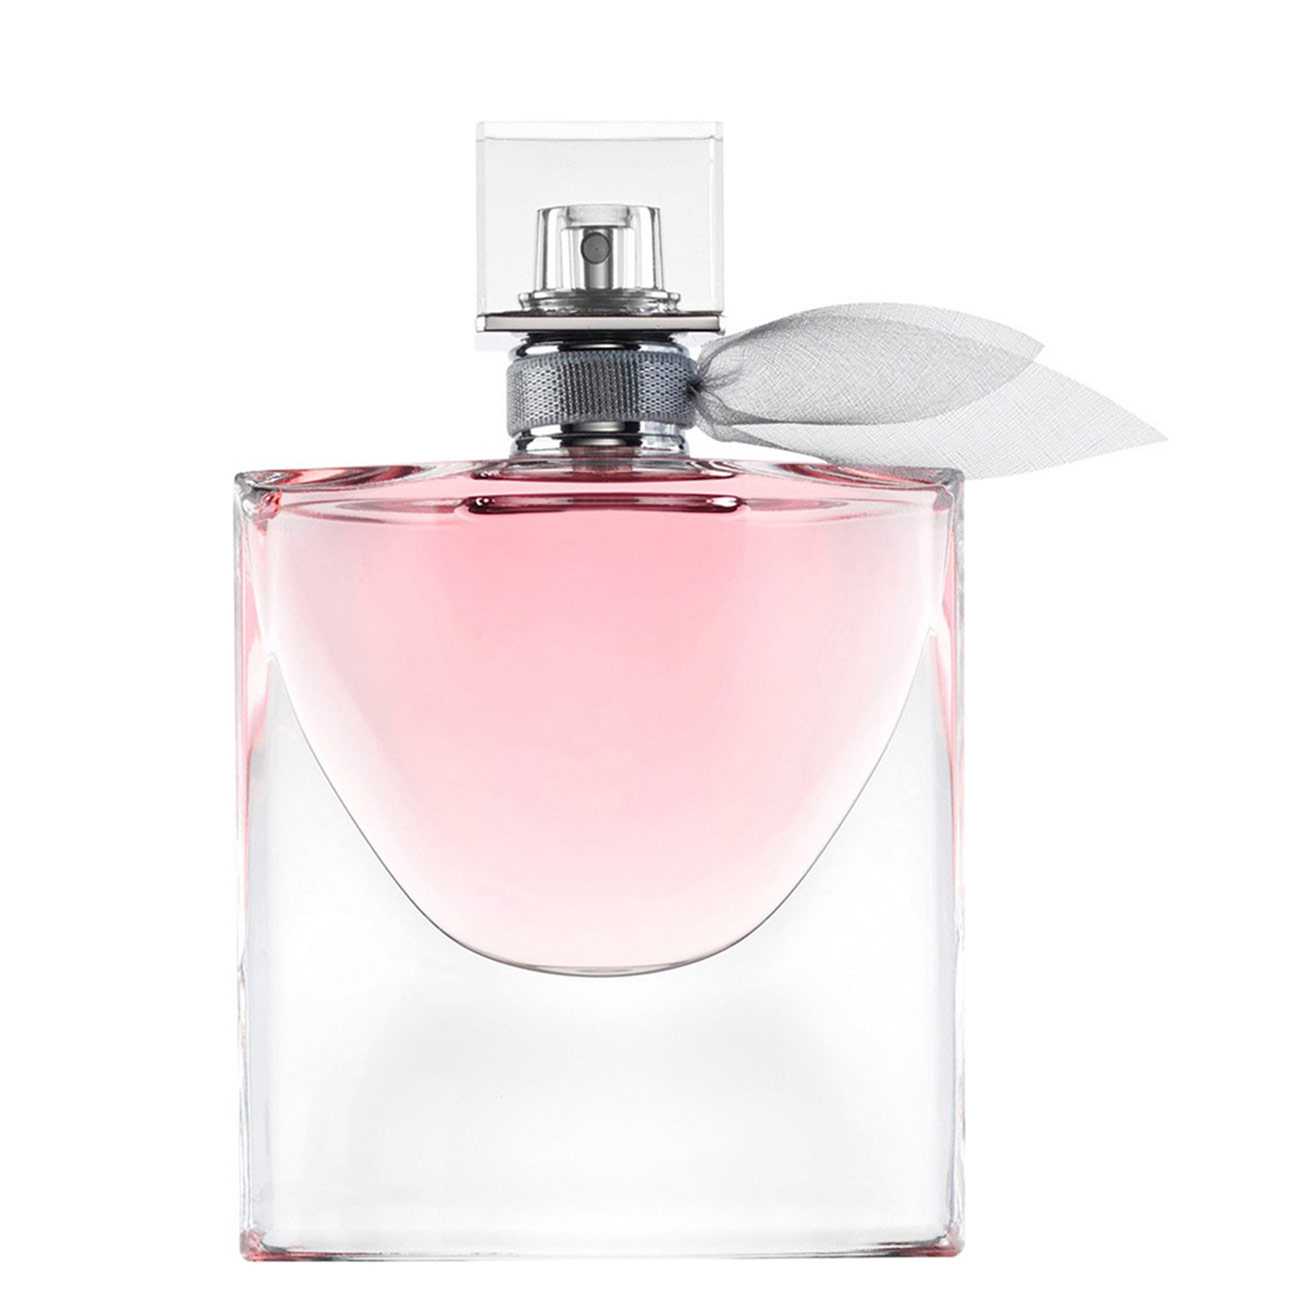 Apa de Parfum Lancôme LA VIE EST BELLE 200ml cu comanda online